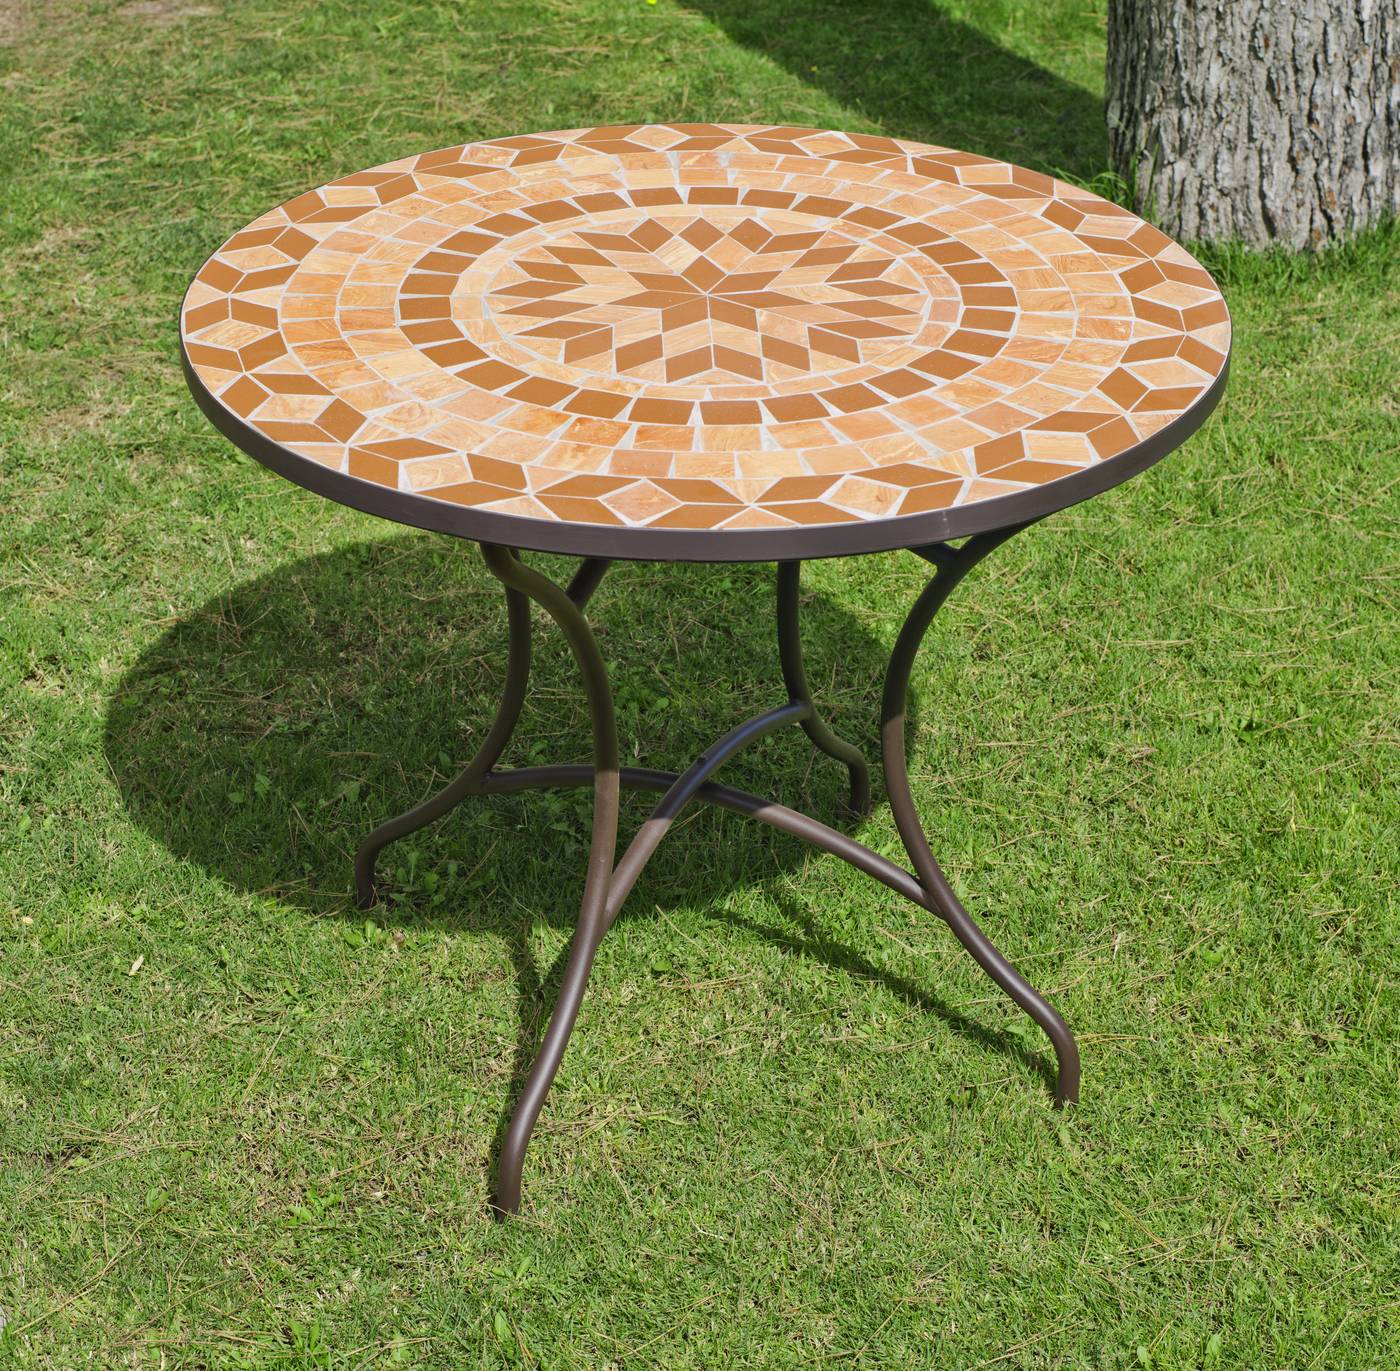 Set Madera Priscila-Manila - Conjunto de madera de teka y acero forjado: 1 mesa mosaico 90Ø + 4 sillones plegables de teka + 4 cojines completos